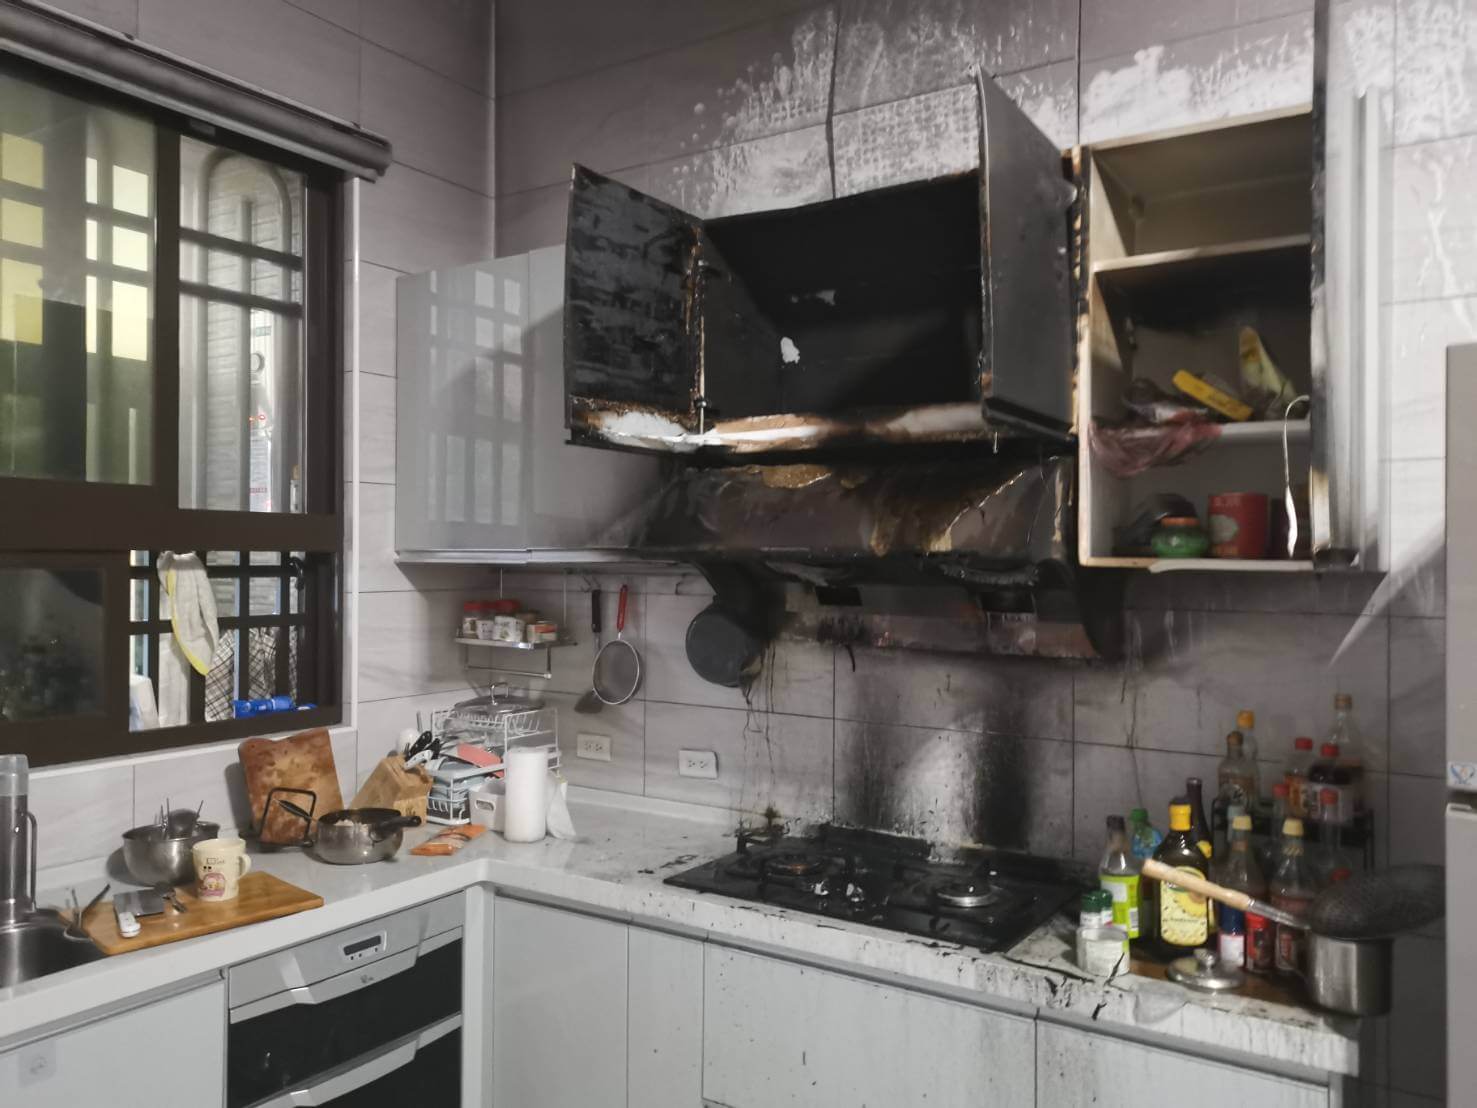 廚房竄出濃煙住宅火災警報器作響 消防救援